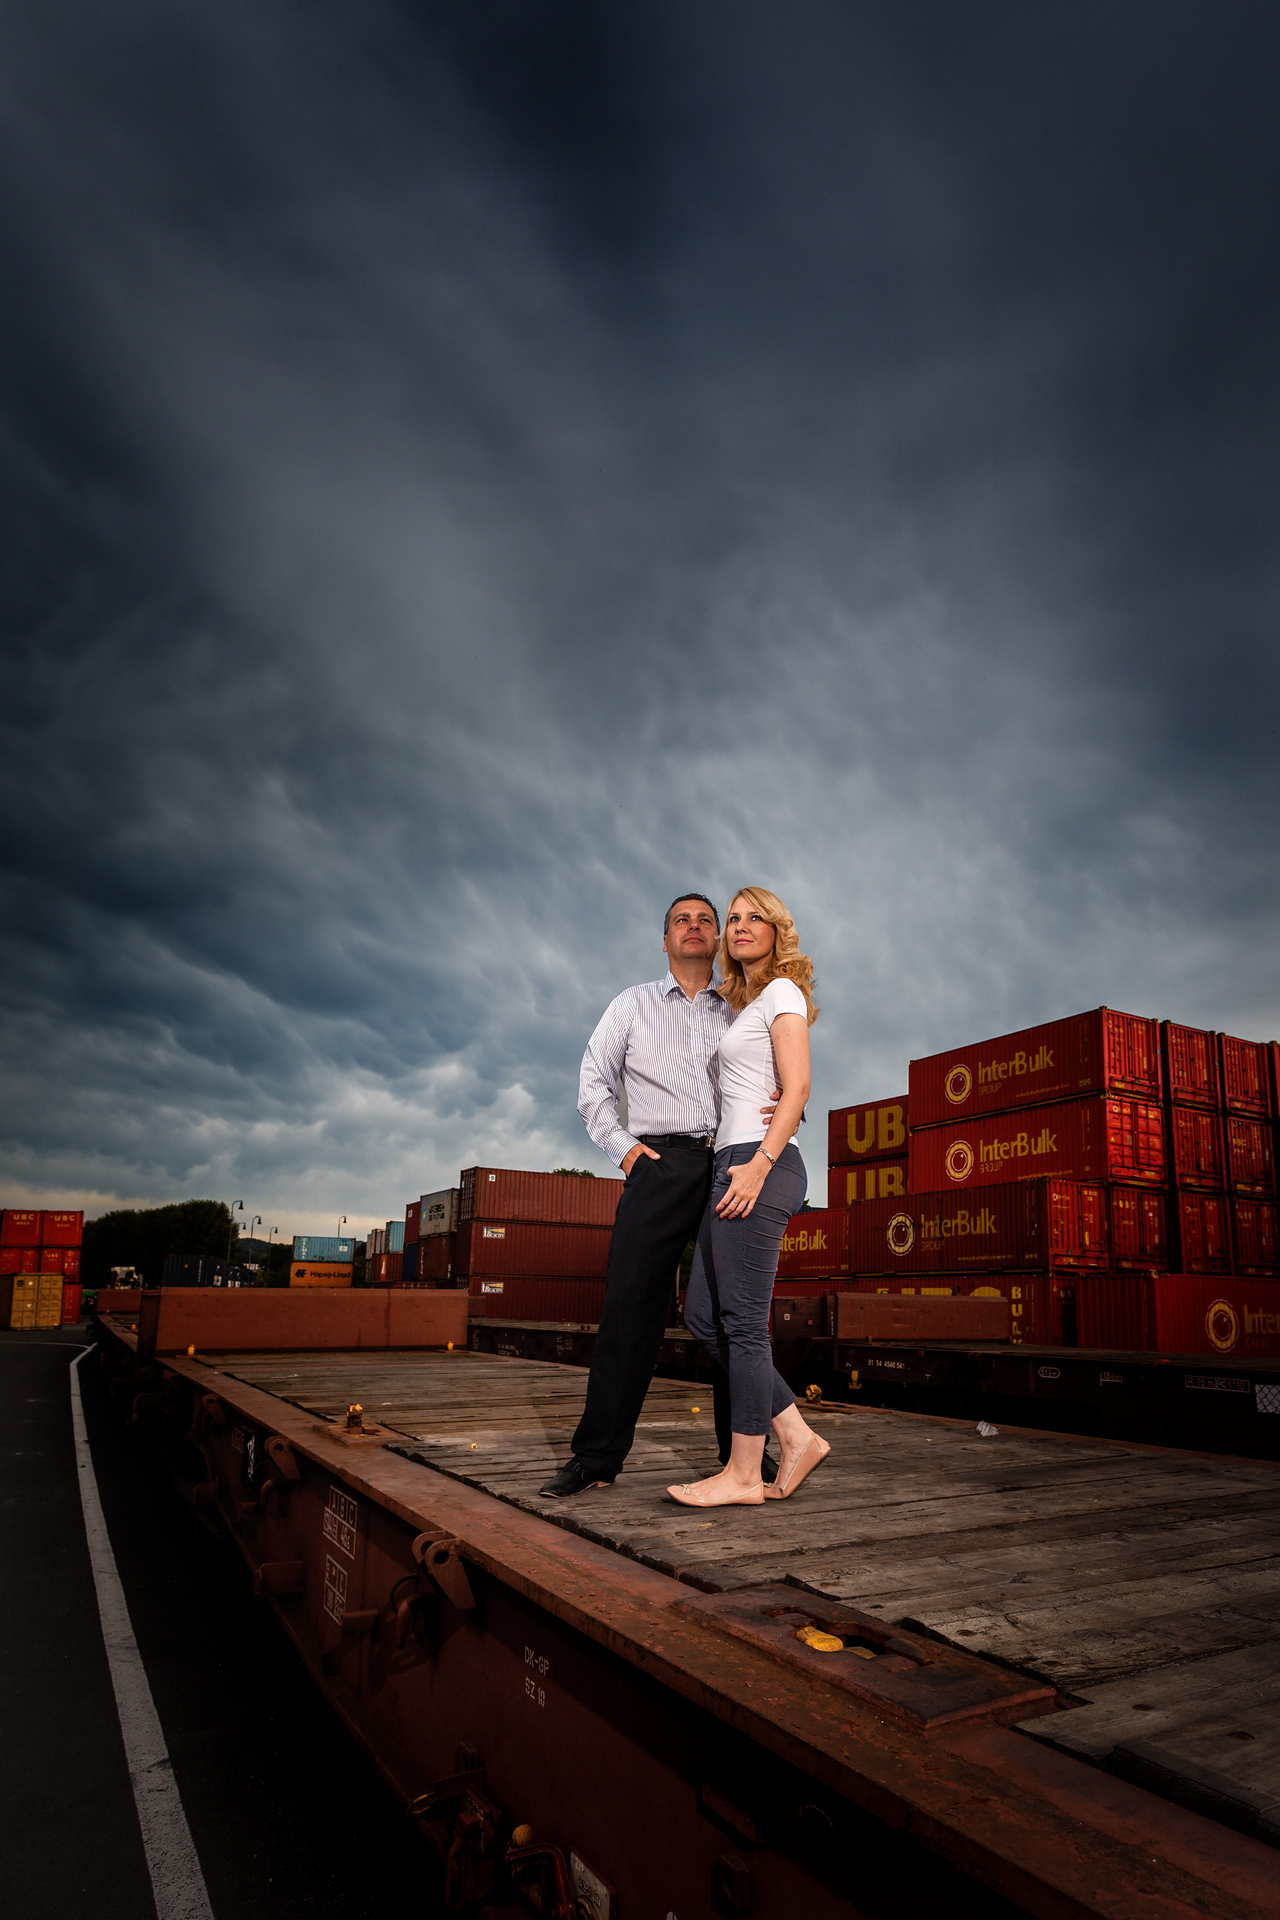 Snoubenci na vagóně na pozadí červených kontejnerů.